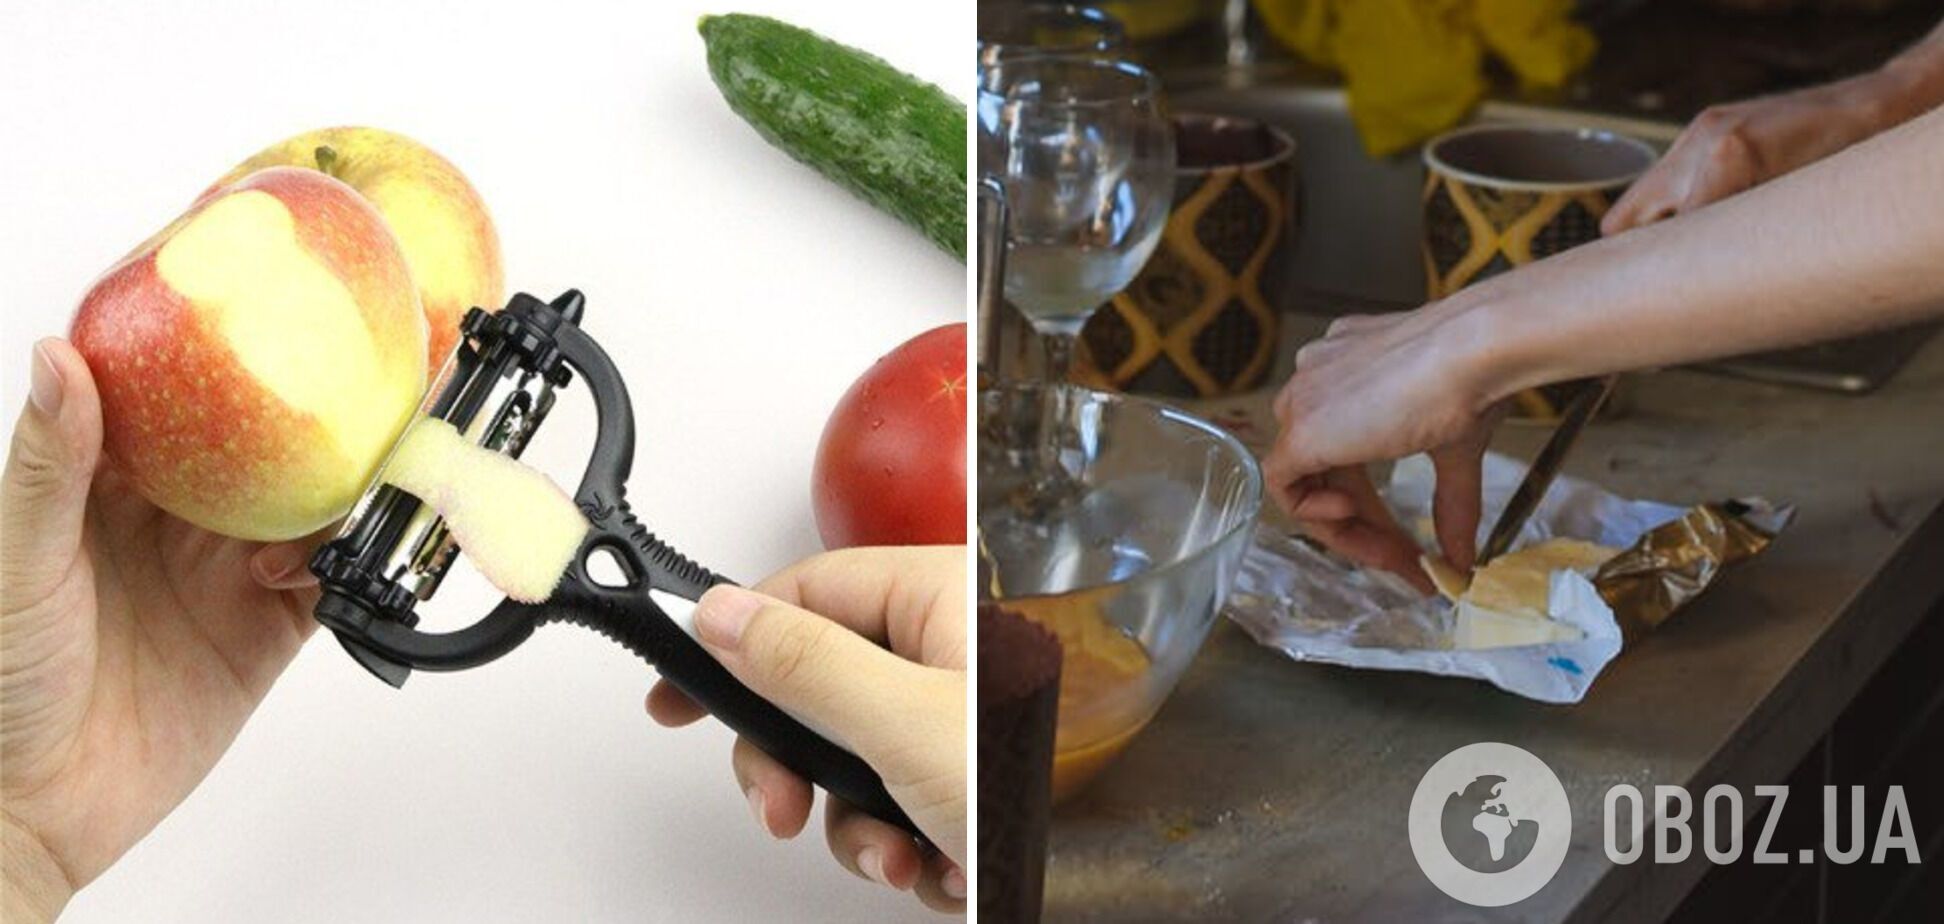 Овочева чистка, яку можна використати замість ножа для нарізання масла